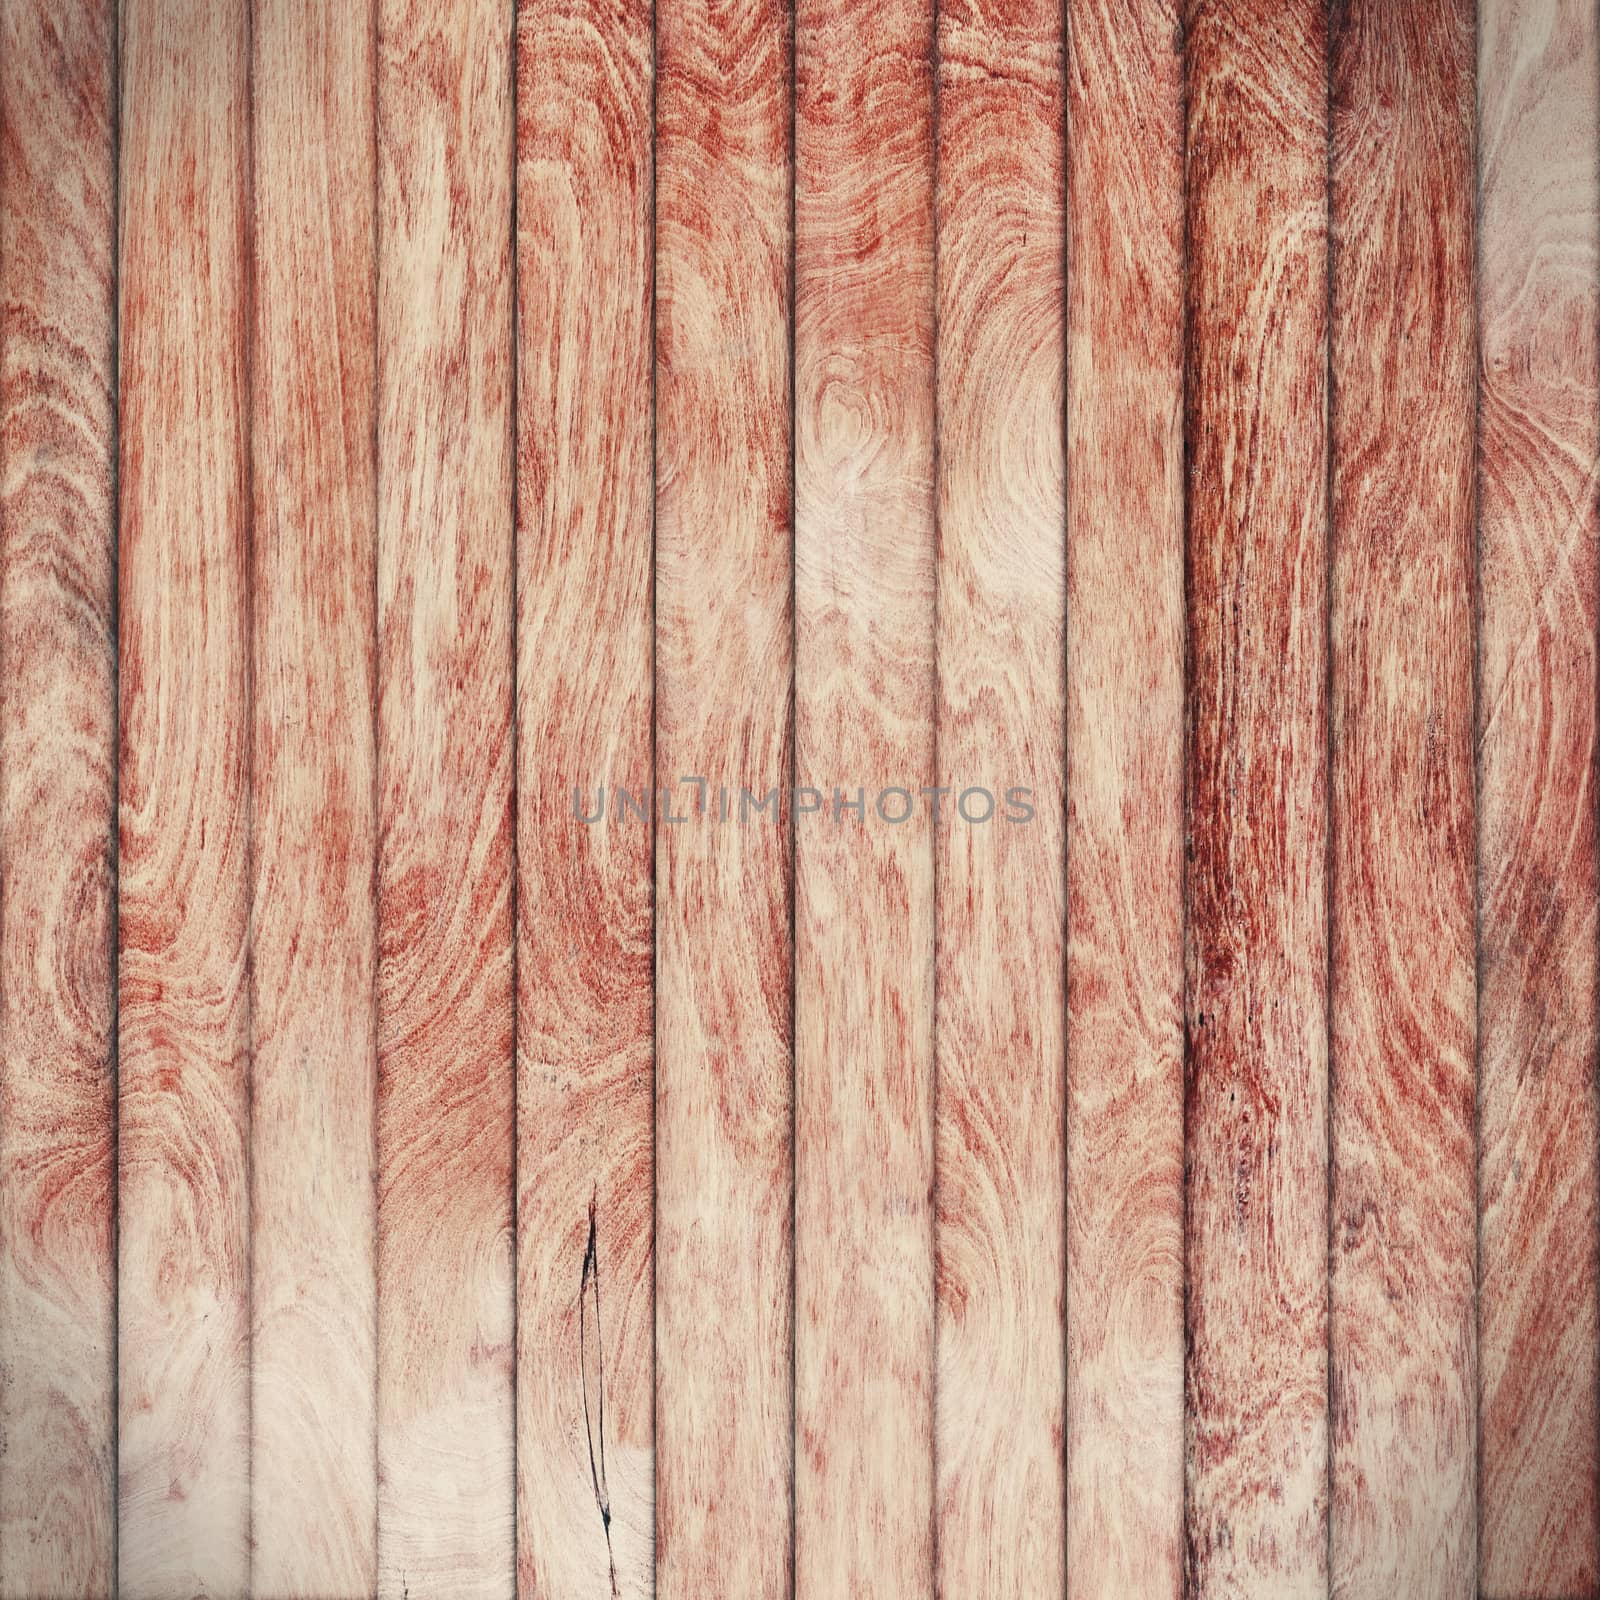 Grunge wood panels by wyoosumran